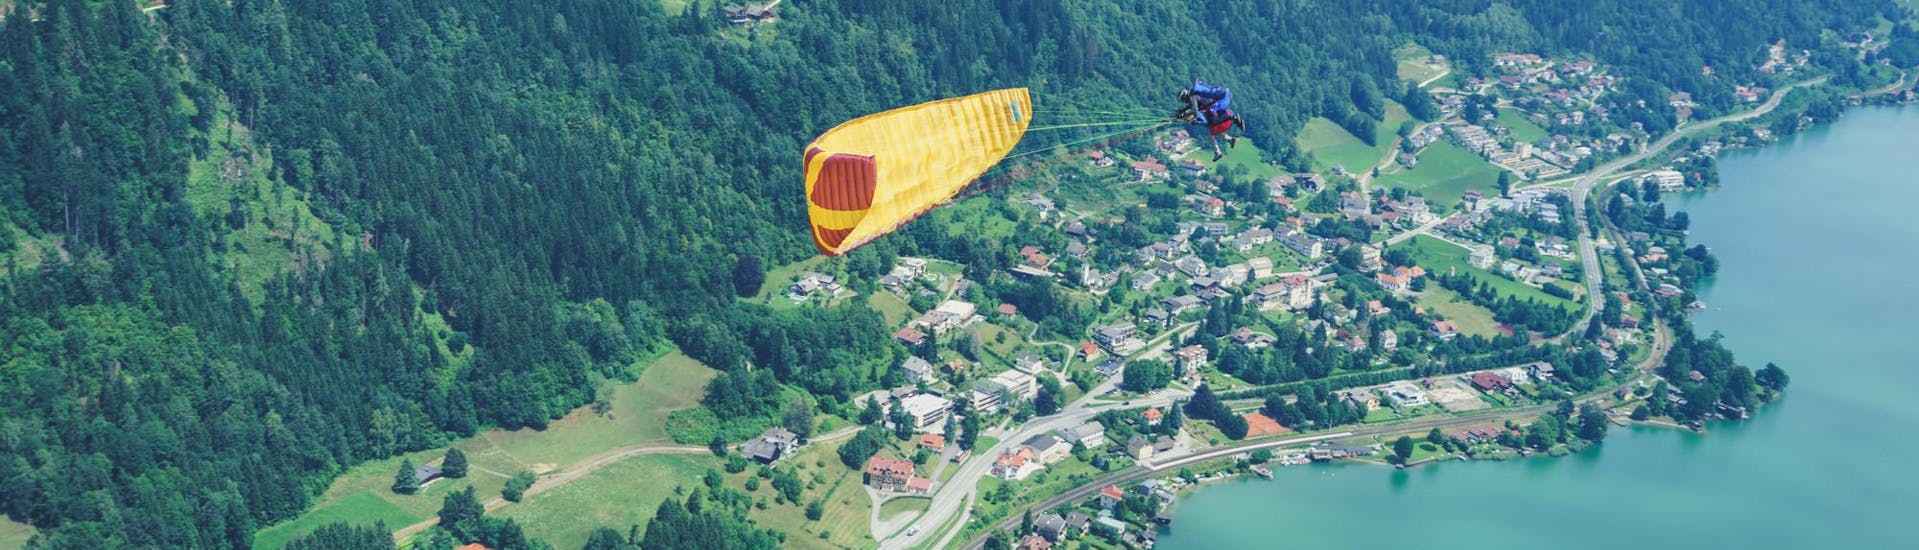 Vol en parapente acrobatique à Villach (dès 6 ans) - Wörthersee.